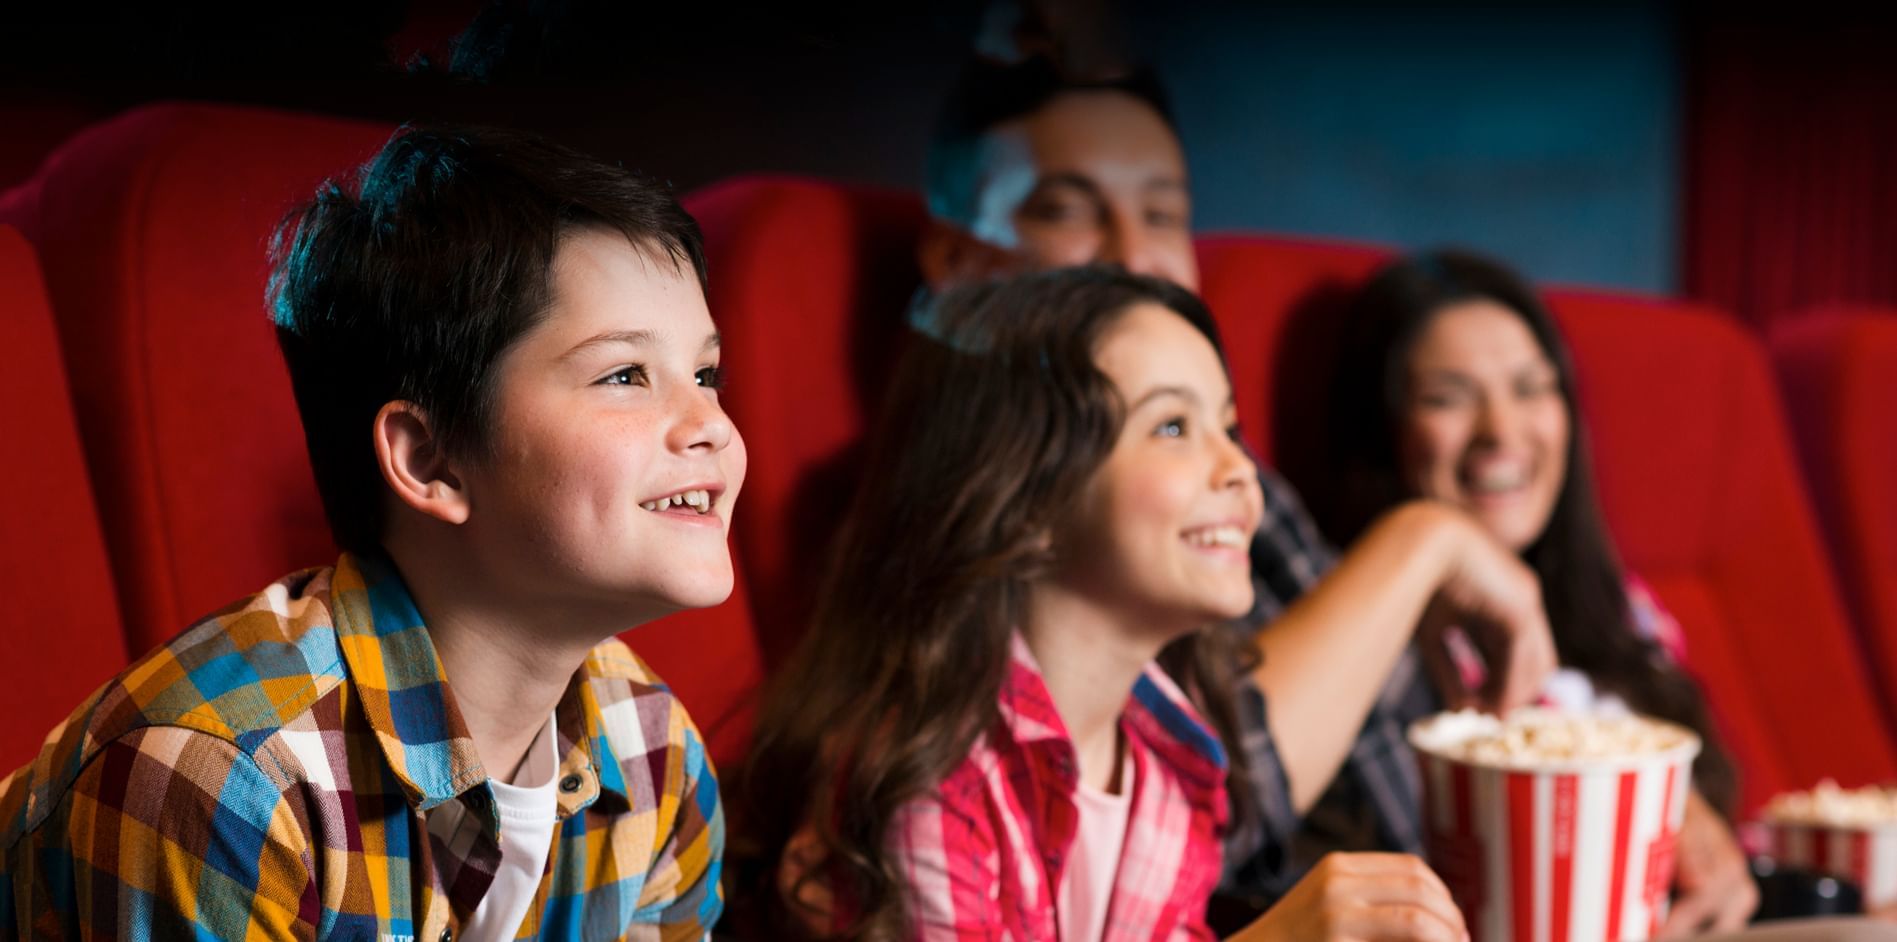 A family enjoying a movie at TGV Cinema at Sunway Resort